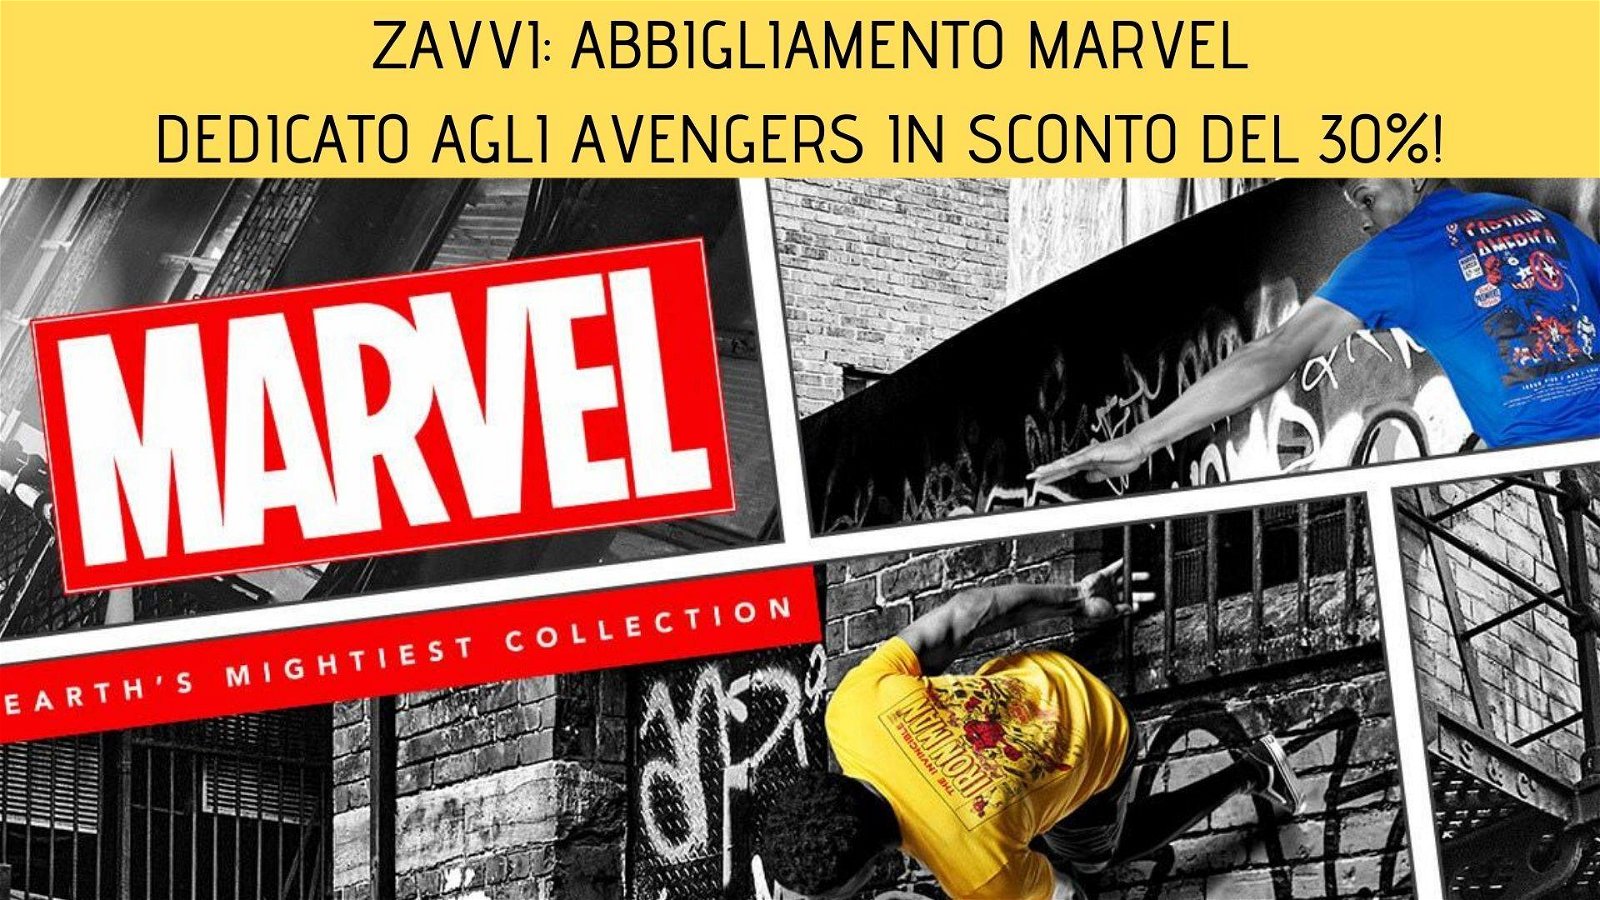 Immagine di Zavvi: abbigliamento Marvel dedicato agli Avengers in sconto del 30%!